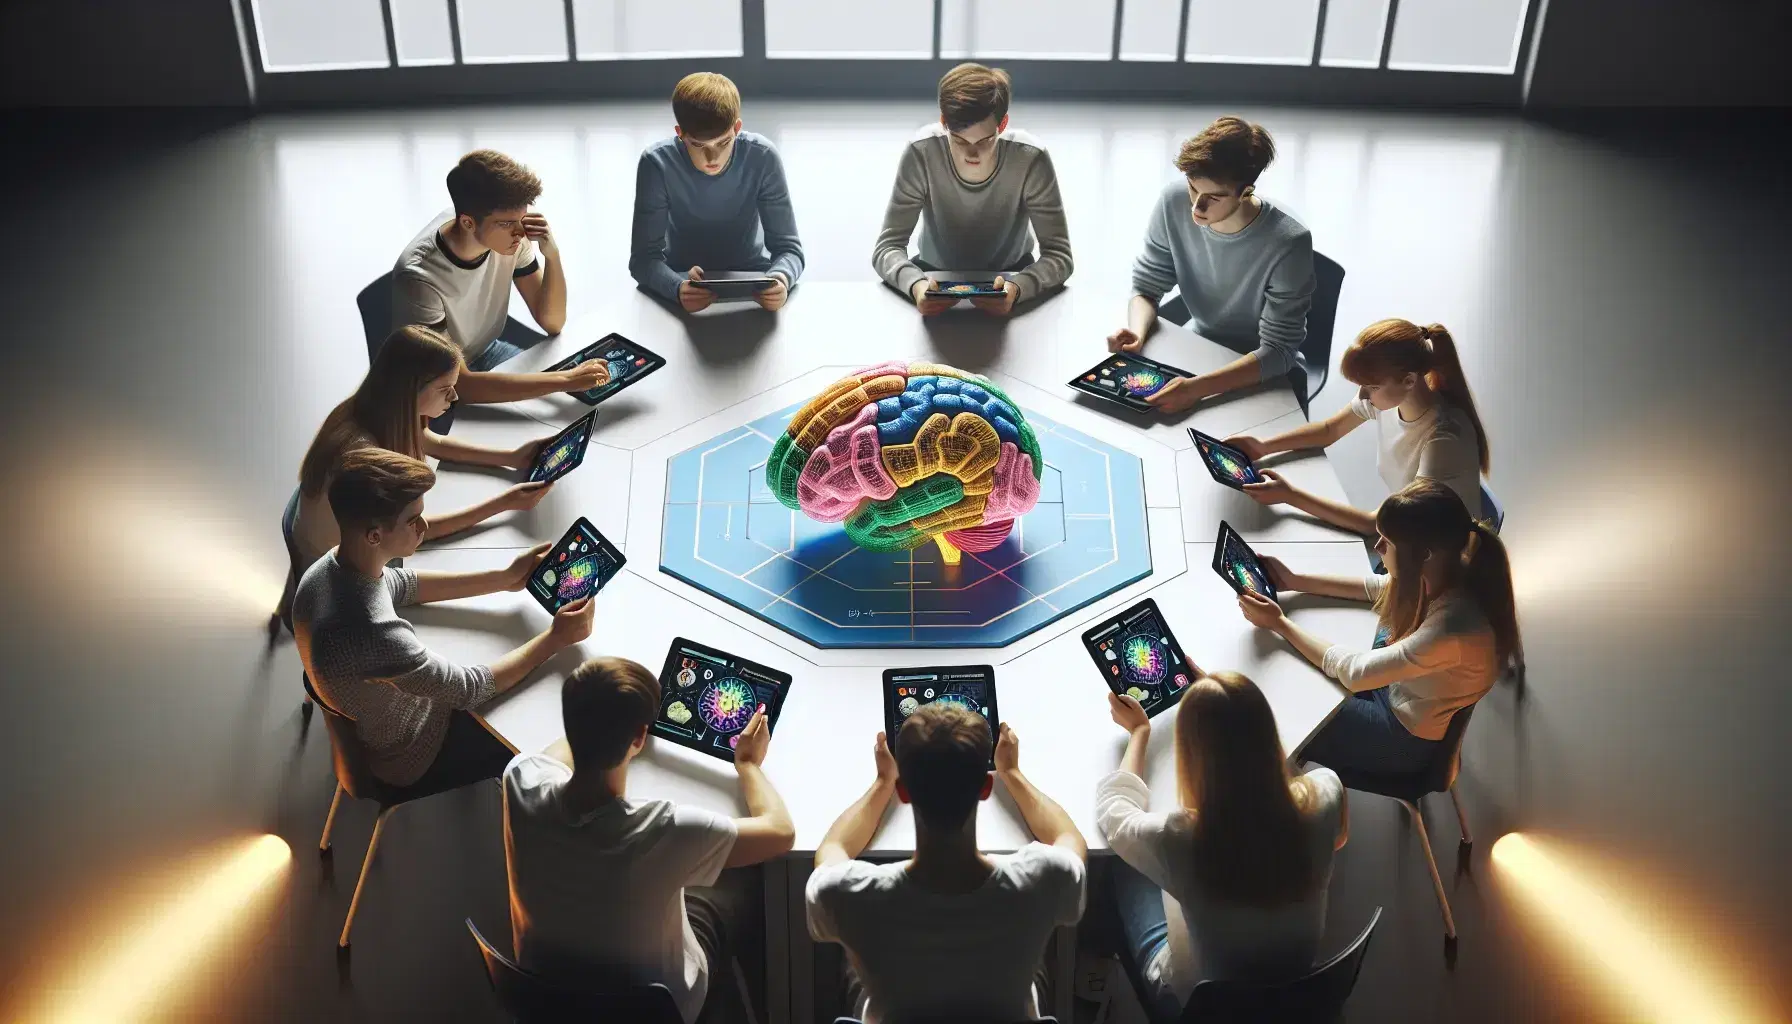 Estudiantes de diversas edades concentrados en tabletas digitales alrededor de una mesa hexagonal con un modelo anatómico del cerebro humano en el centro, en un aula con iluminación difusa.